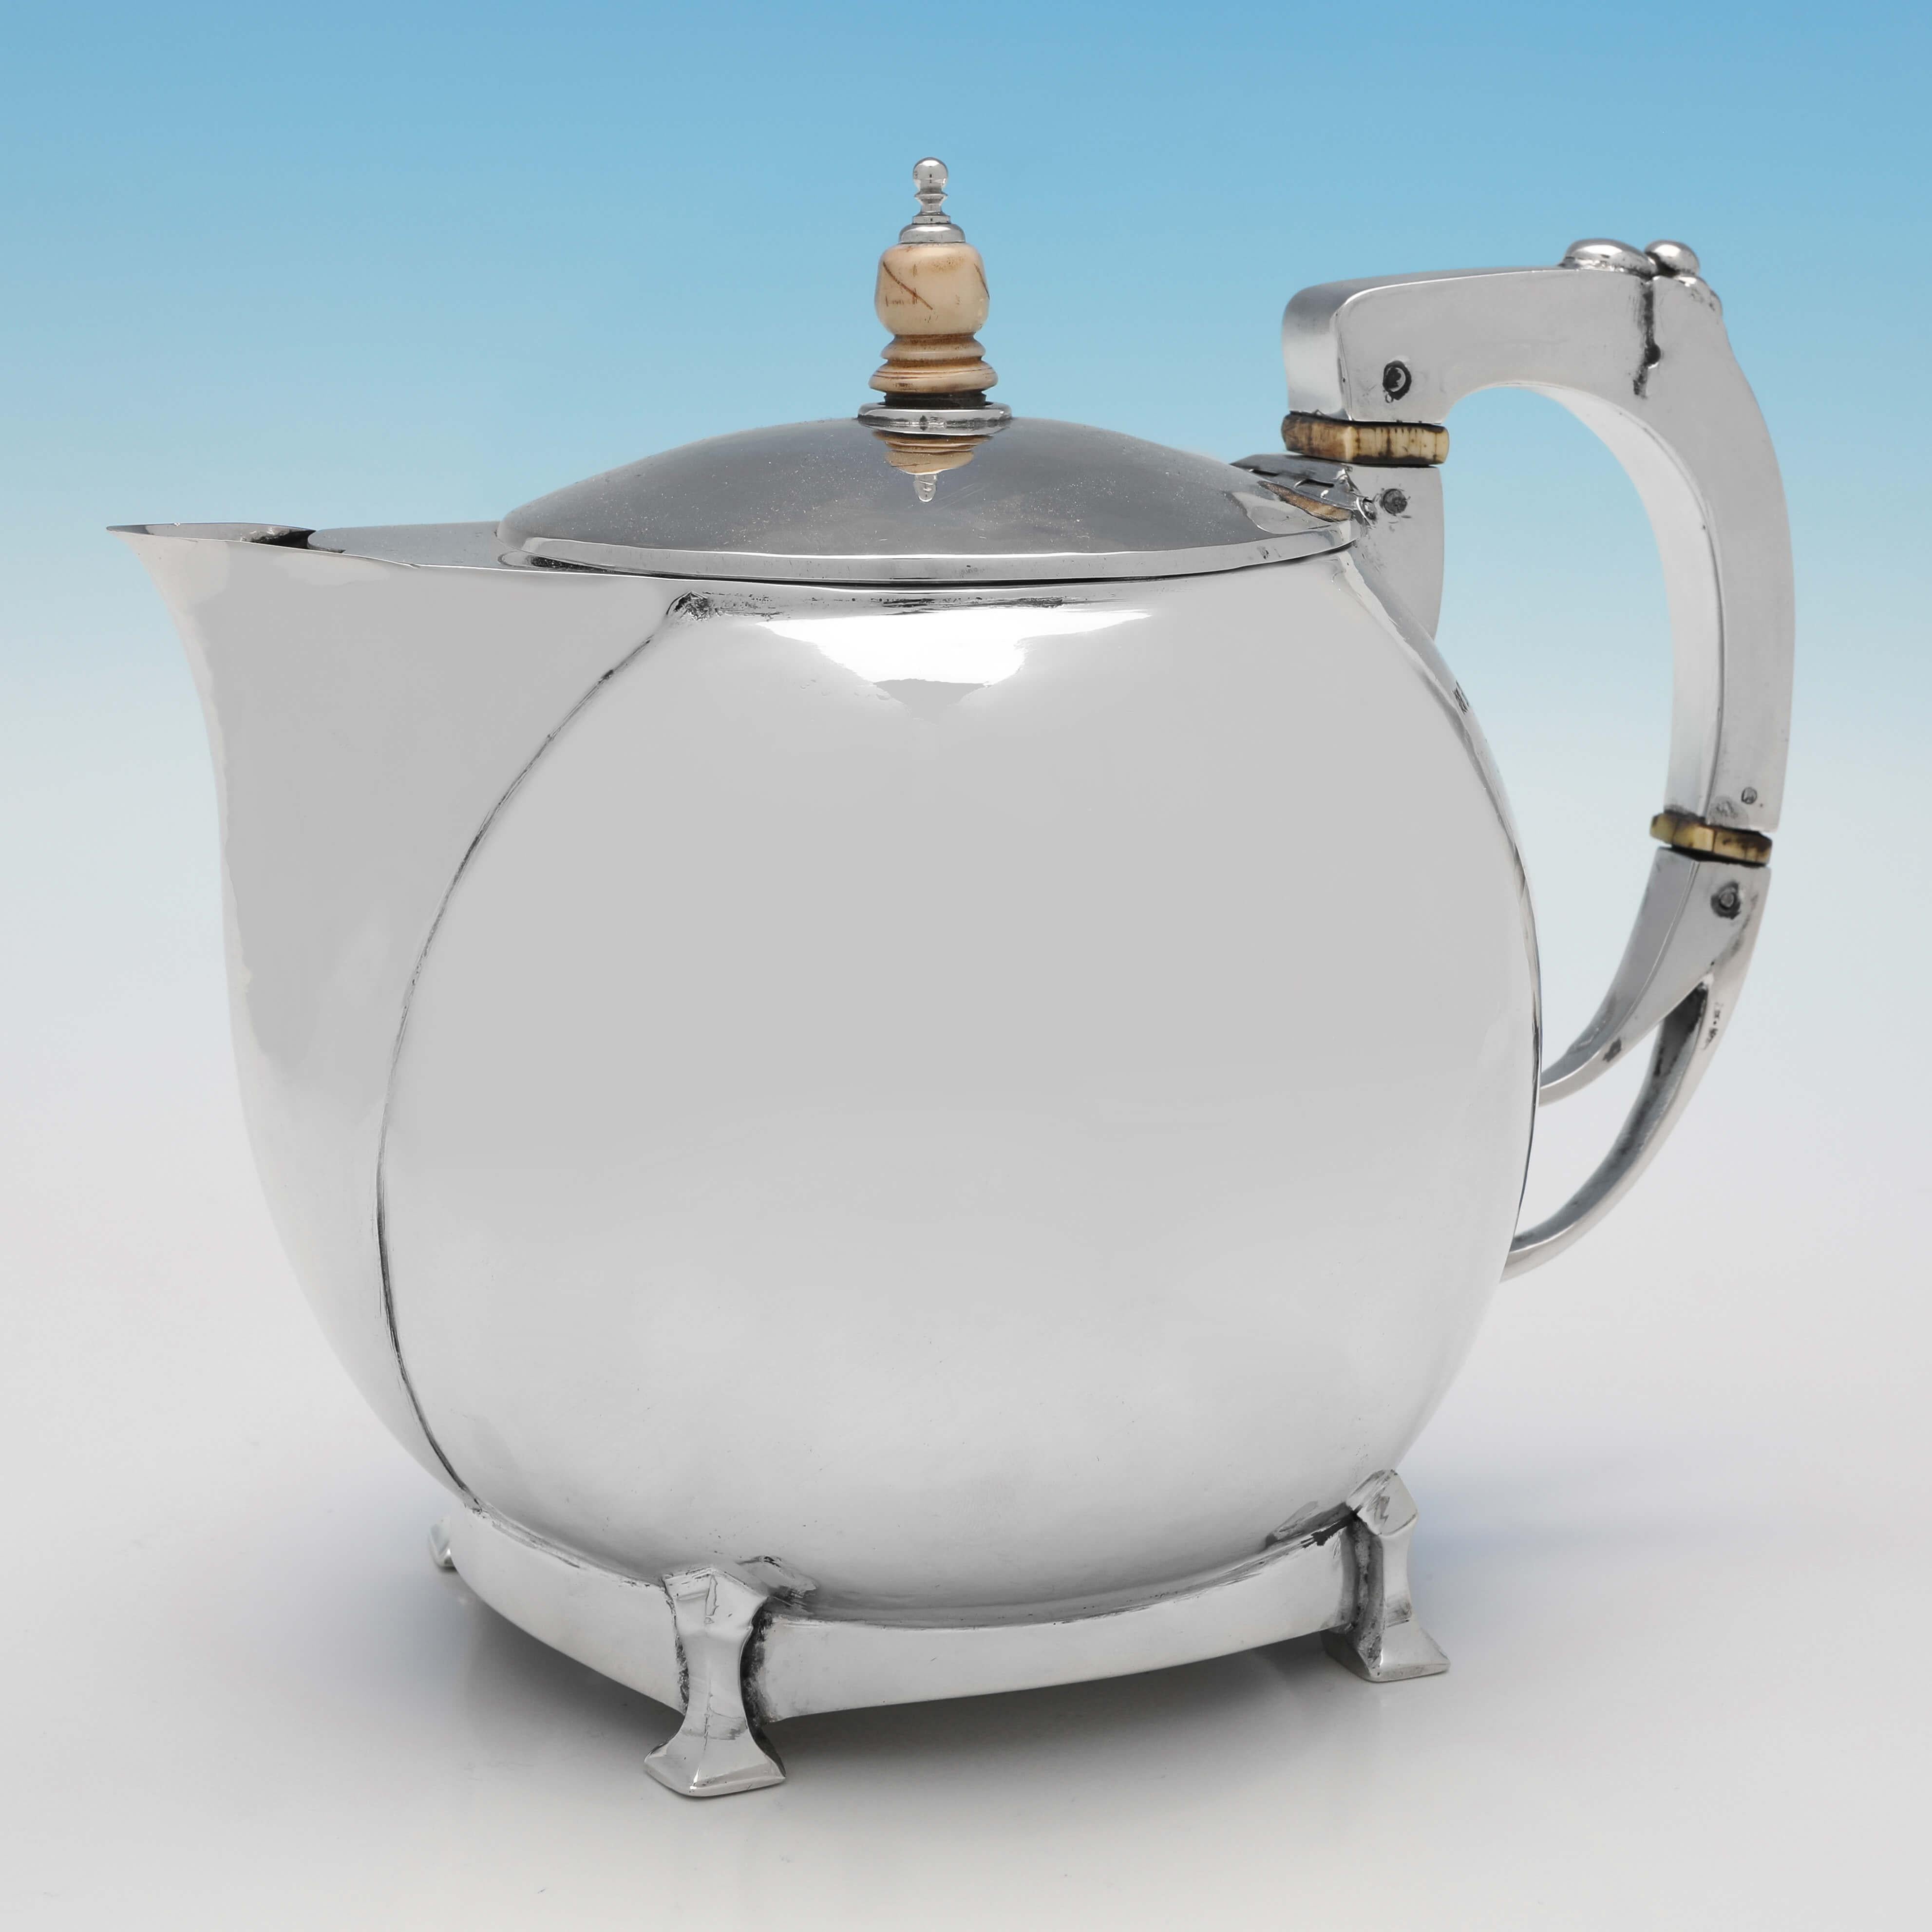 Dieses wunderbare 4-teilige Teeservice aus Sterlingsilber wurde 1929 in Birmingham von William Henry Creswick gepunzt (die Kanne mit dem heißen Wasser wurde 1935 gepunzt) und ist ein hervorragendes Beispiel für Arts & Crafts Design. Die Teekanne ist